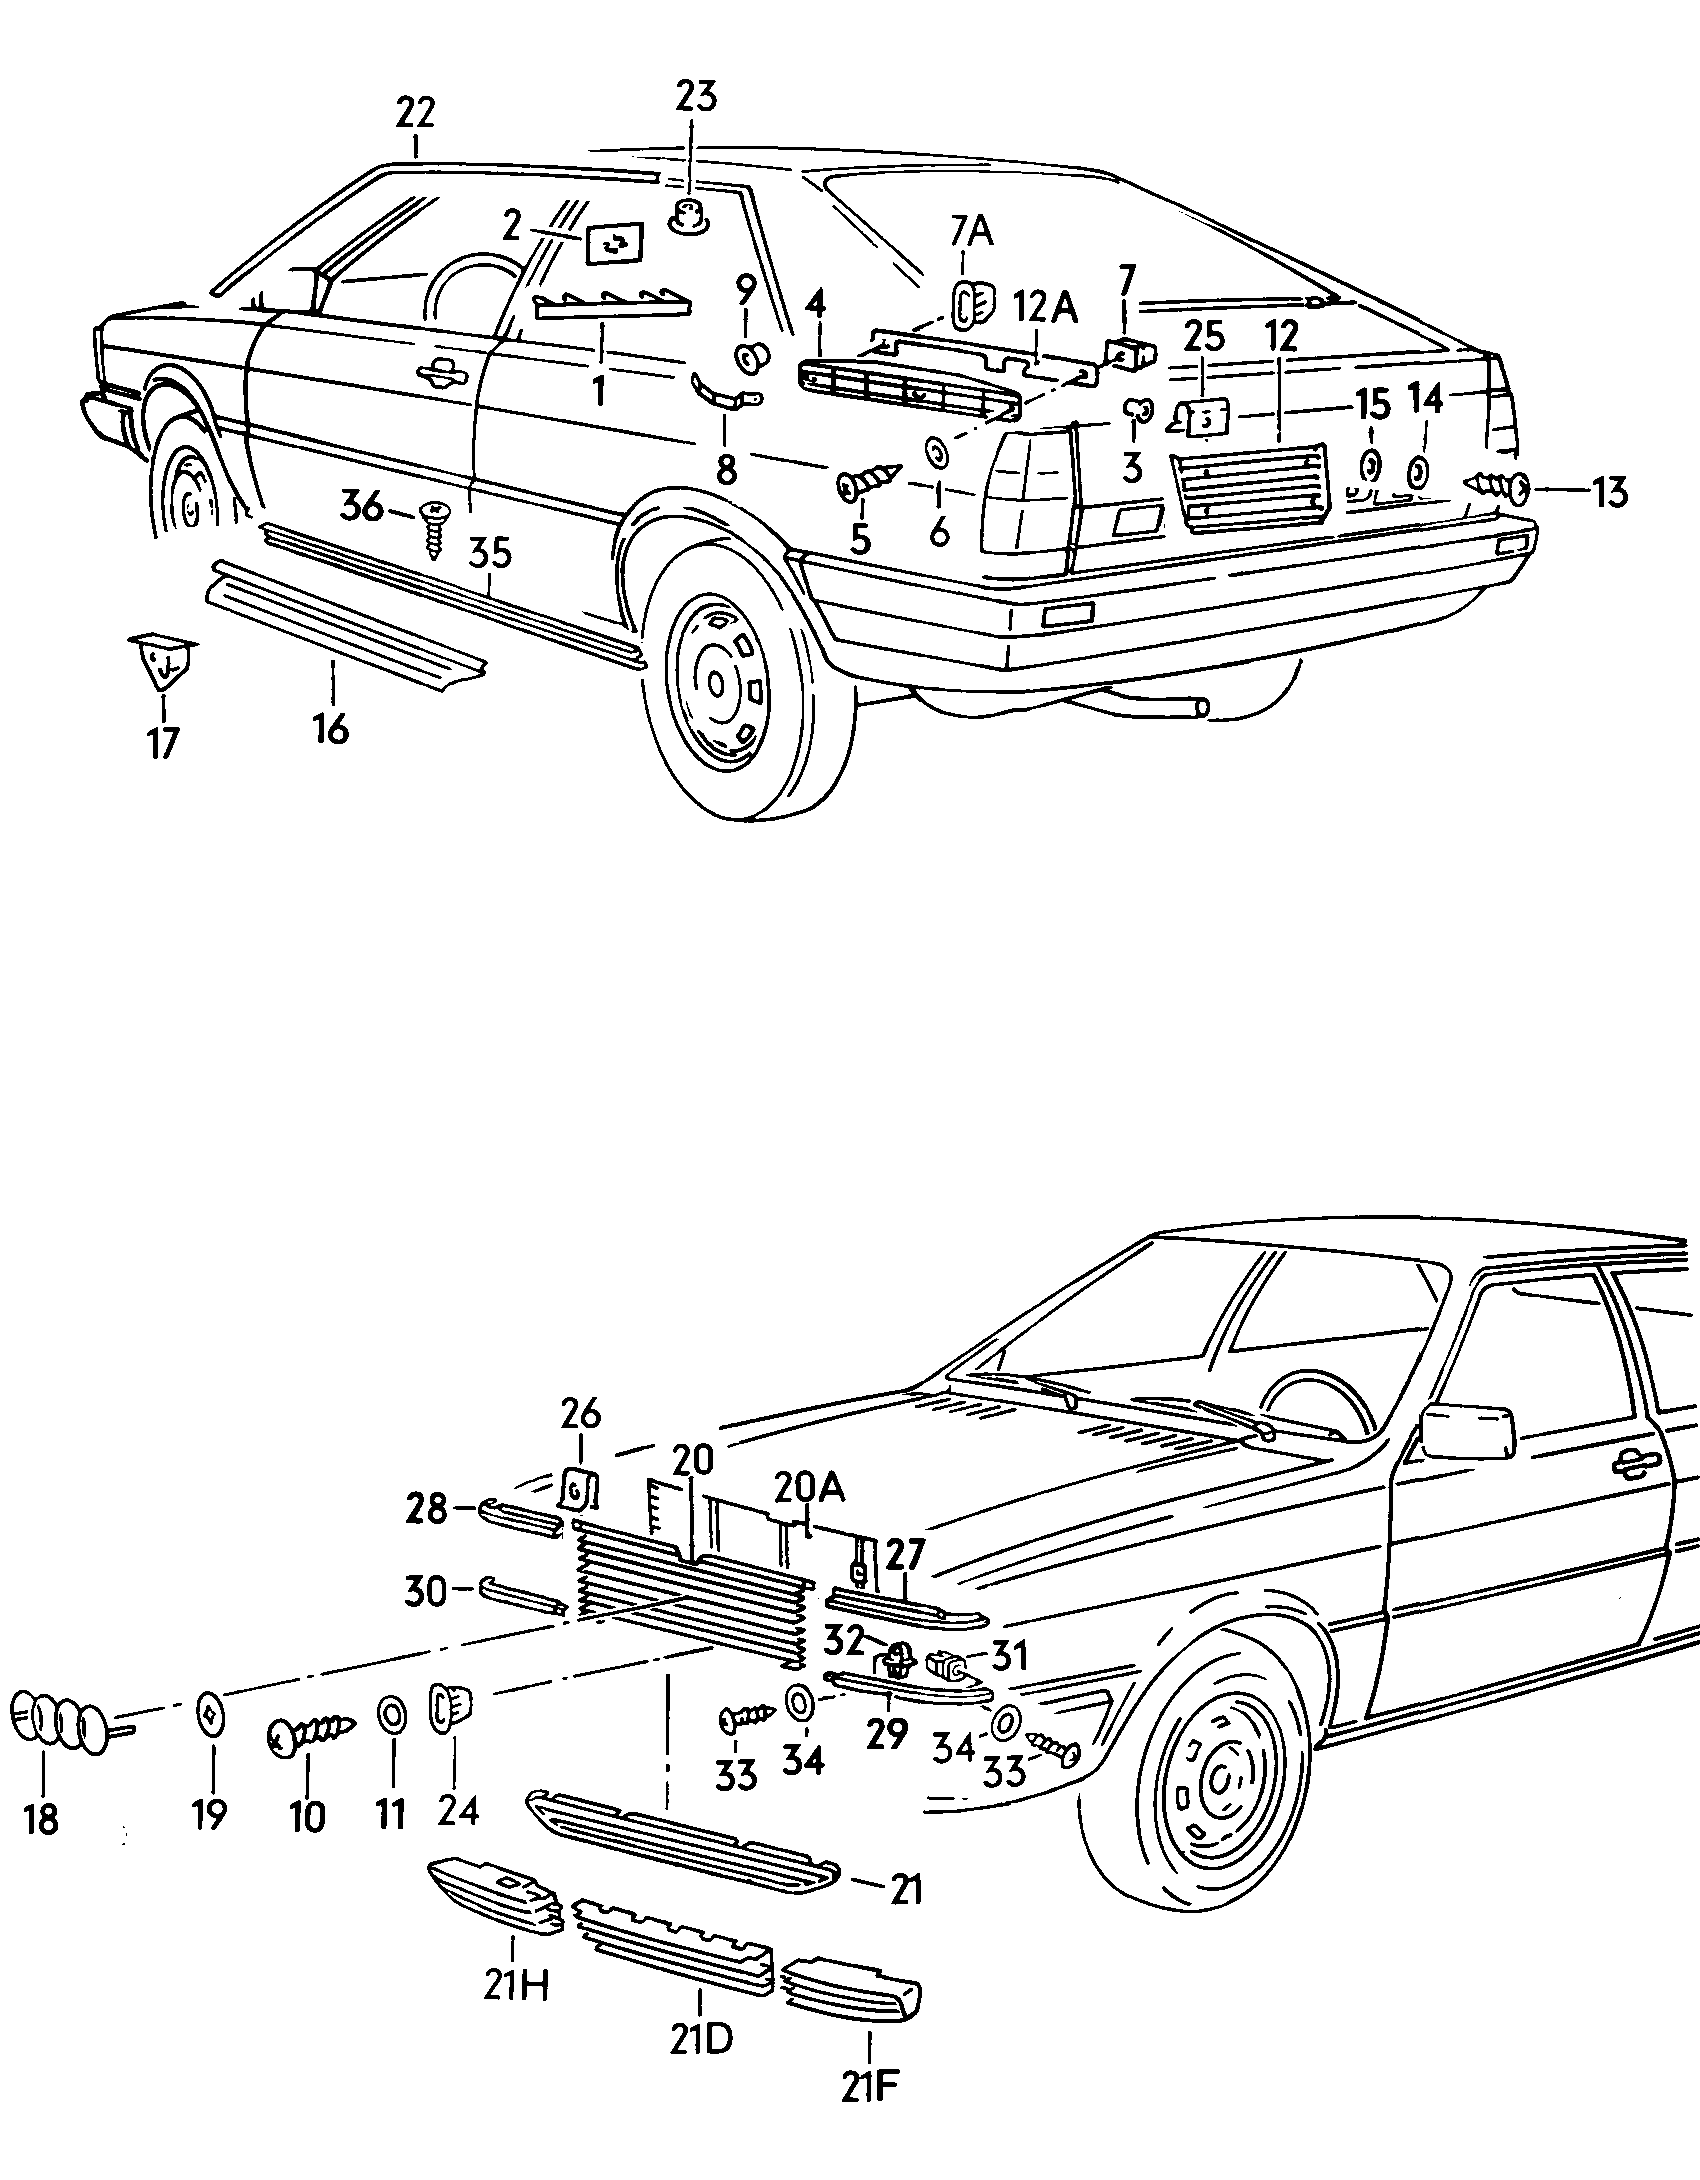 inscriptions/lettering rear - Audi Coupe - cou